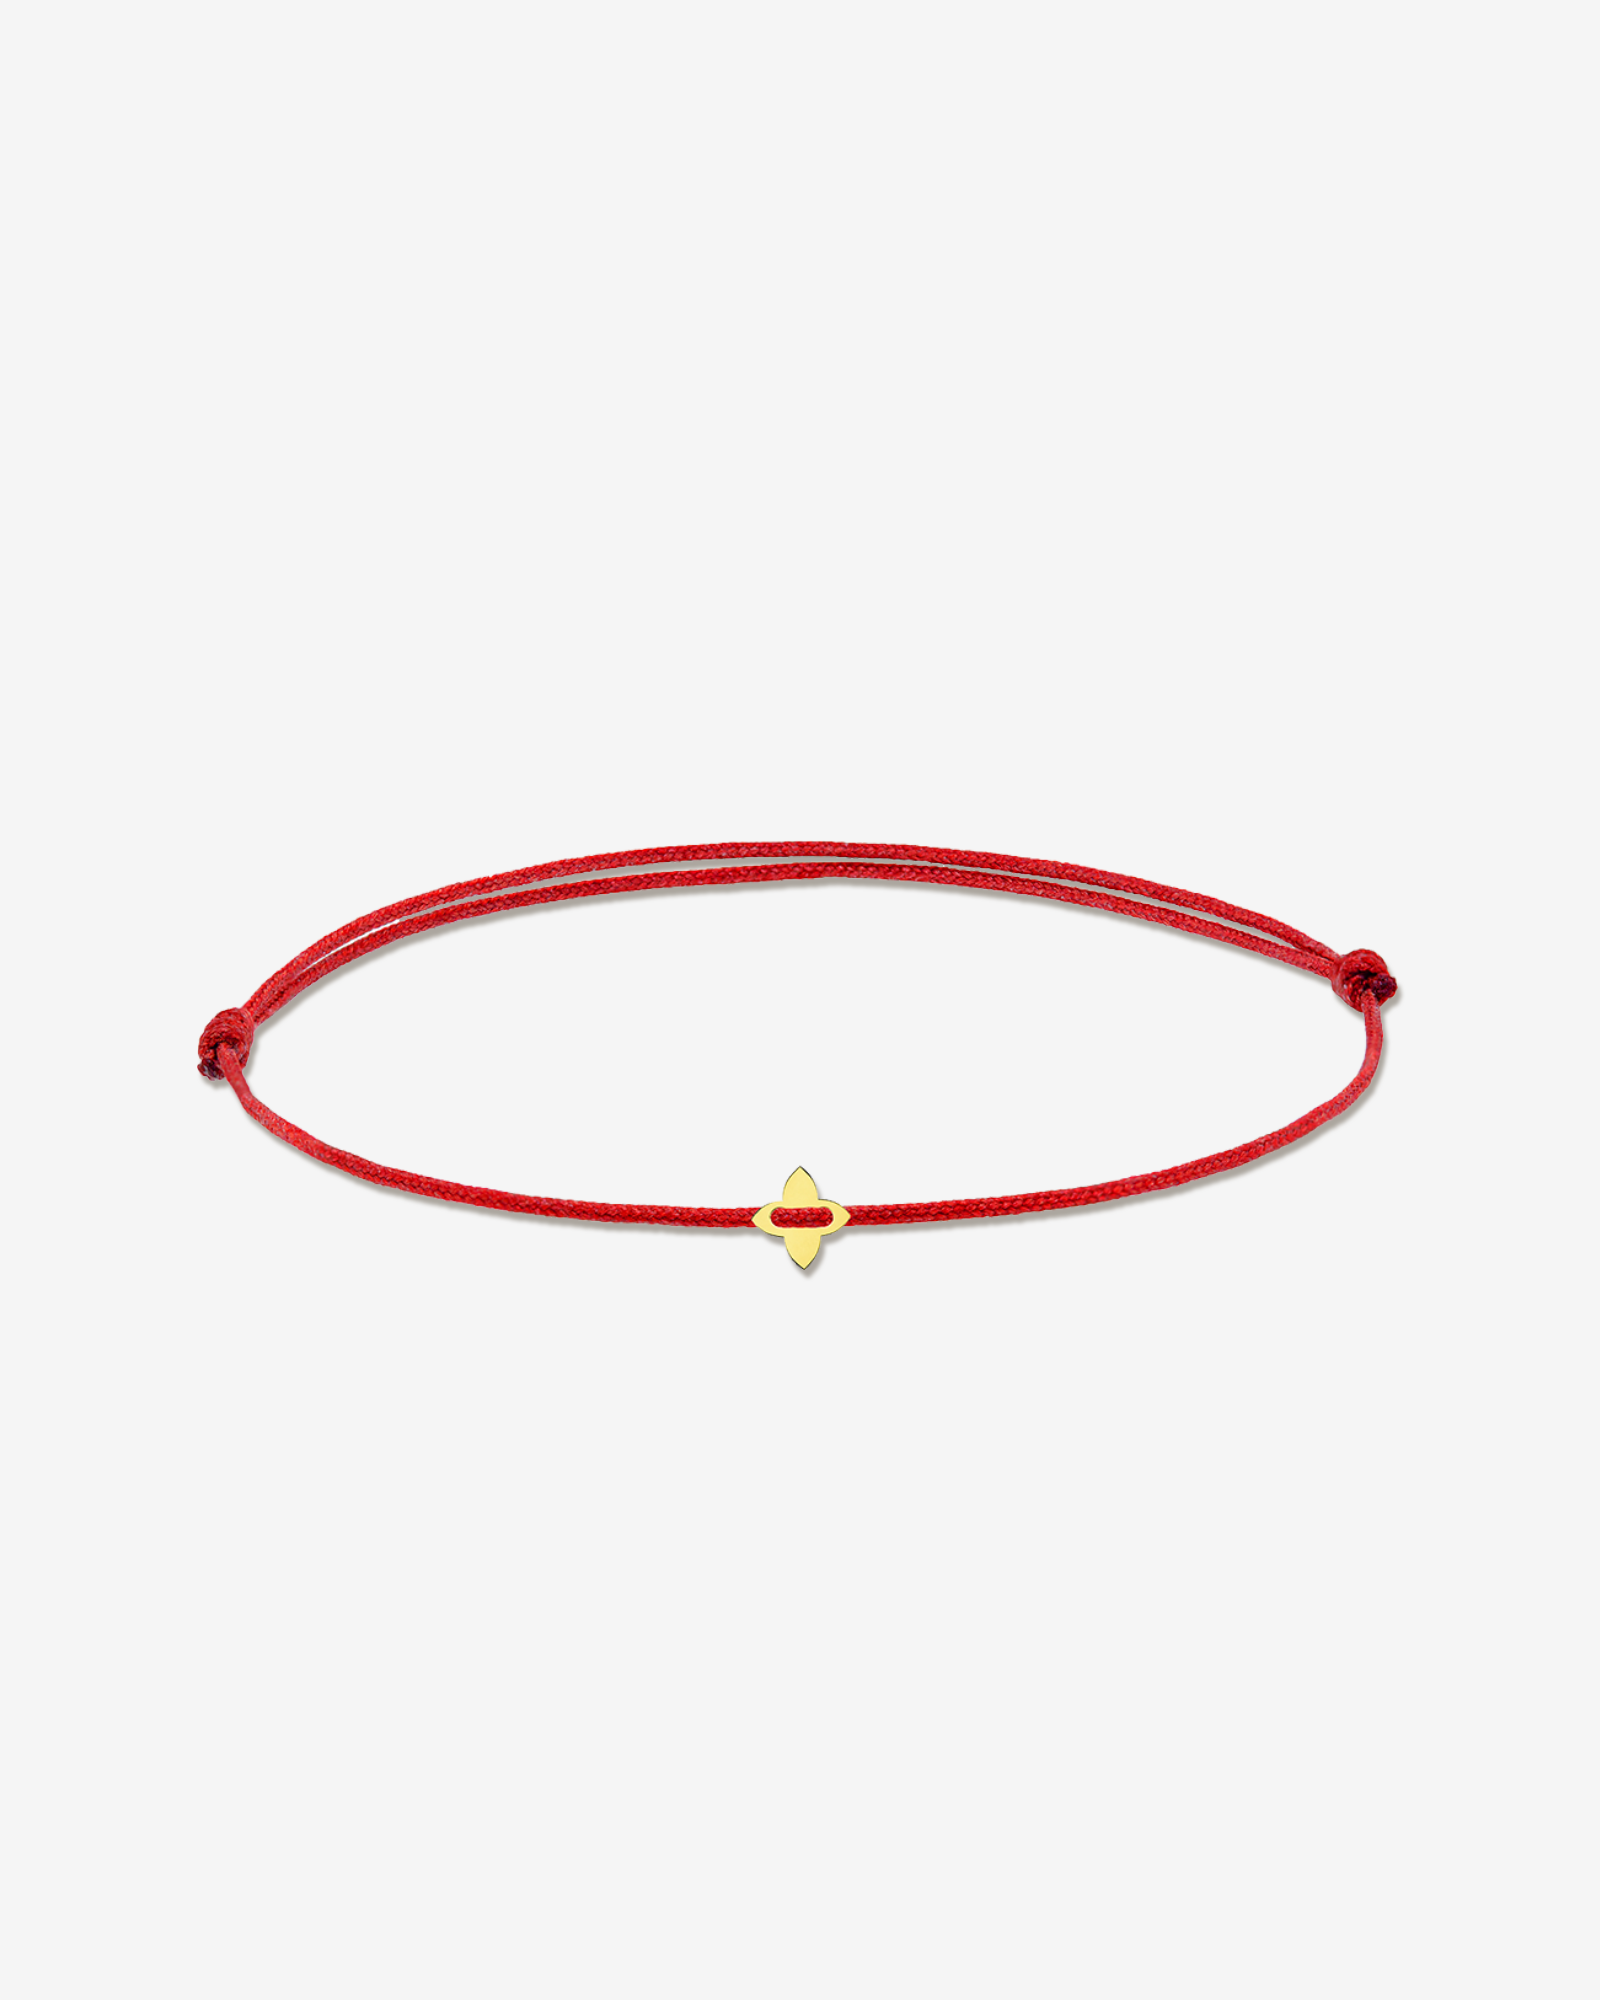 Lily - bracelet